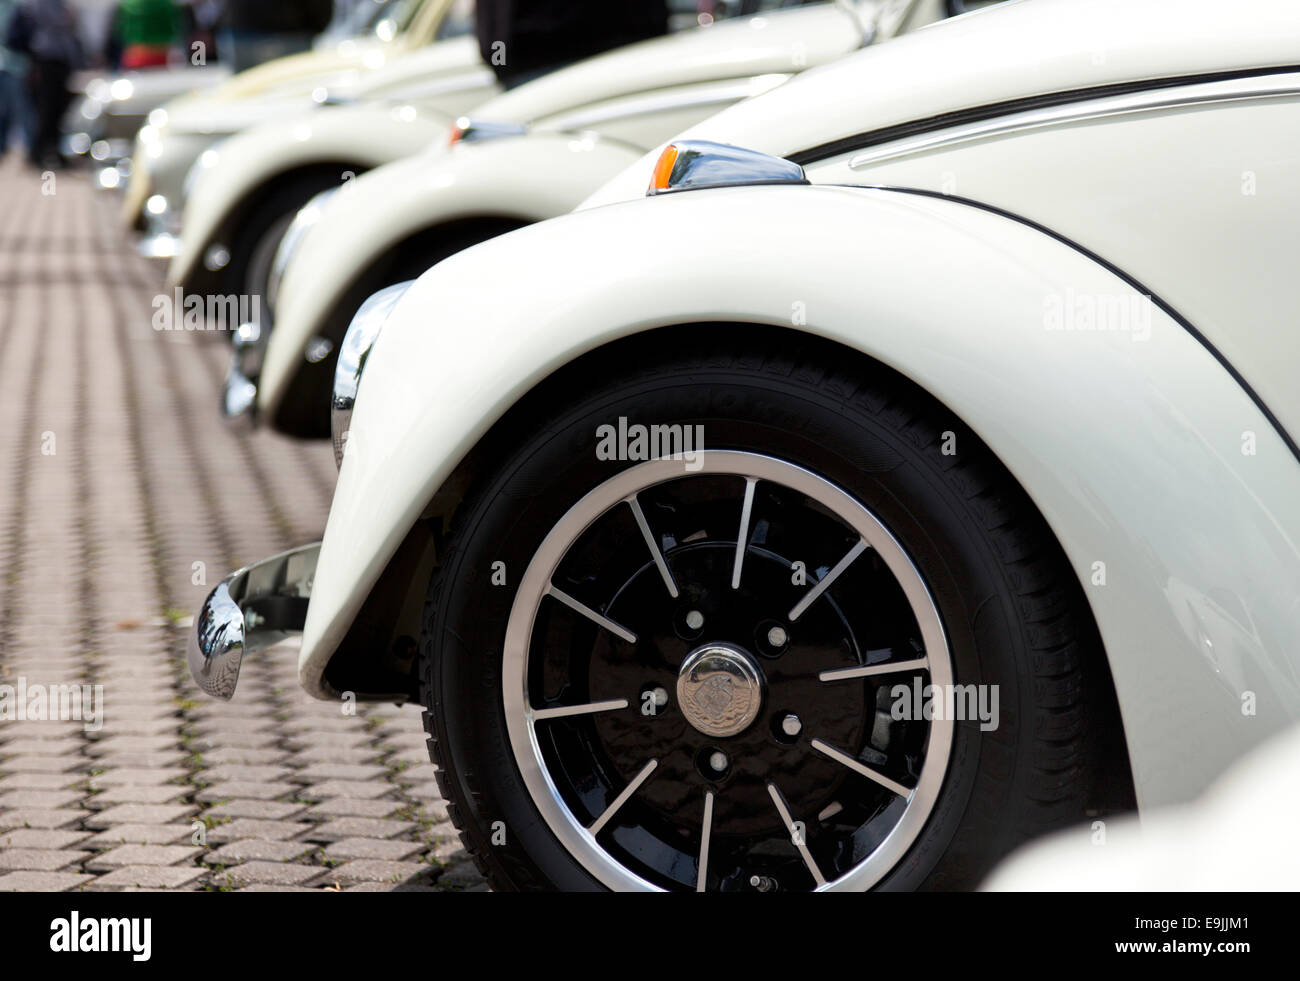 Fila di vintage Volkswagen Beetle cars, primo piano del parafango e Porsche Design, la ruota di profondità di campo Foto Stock